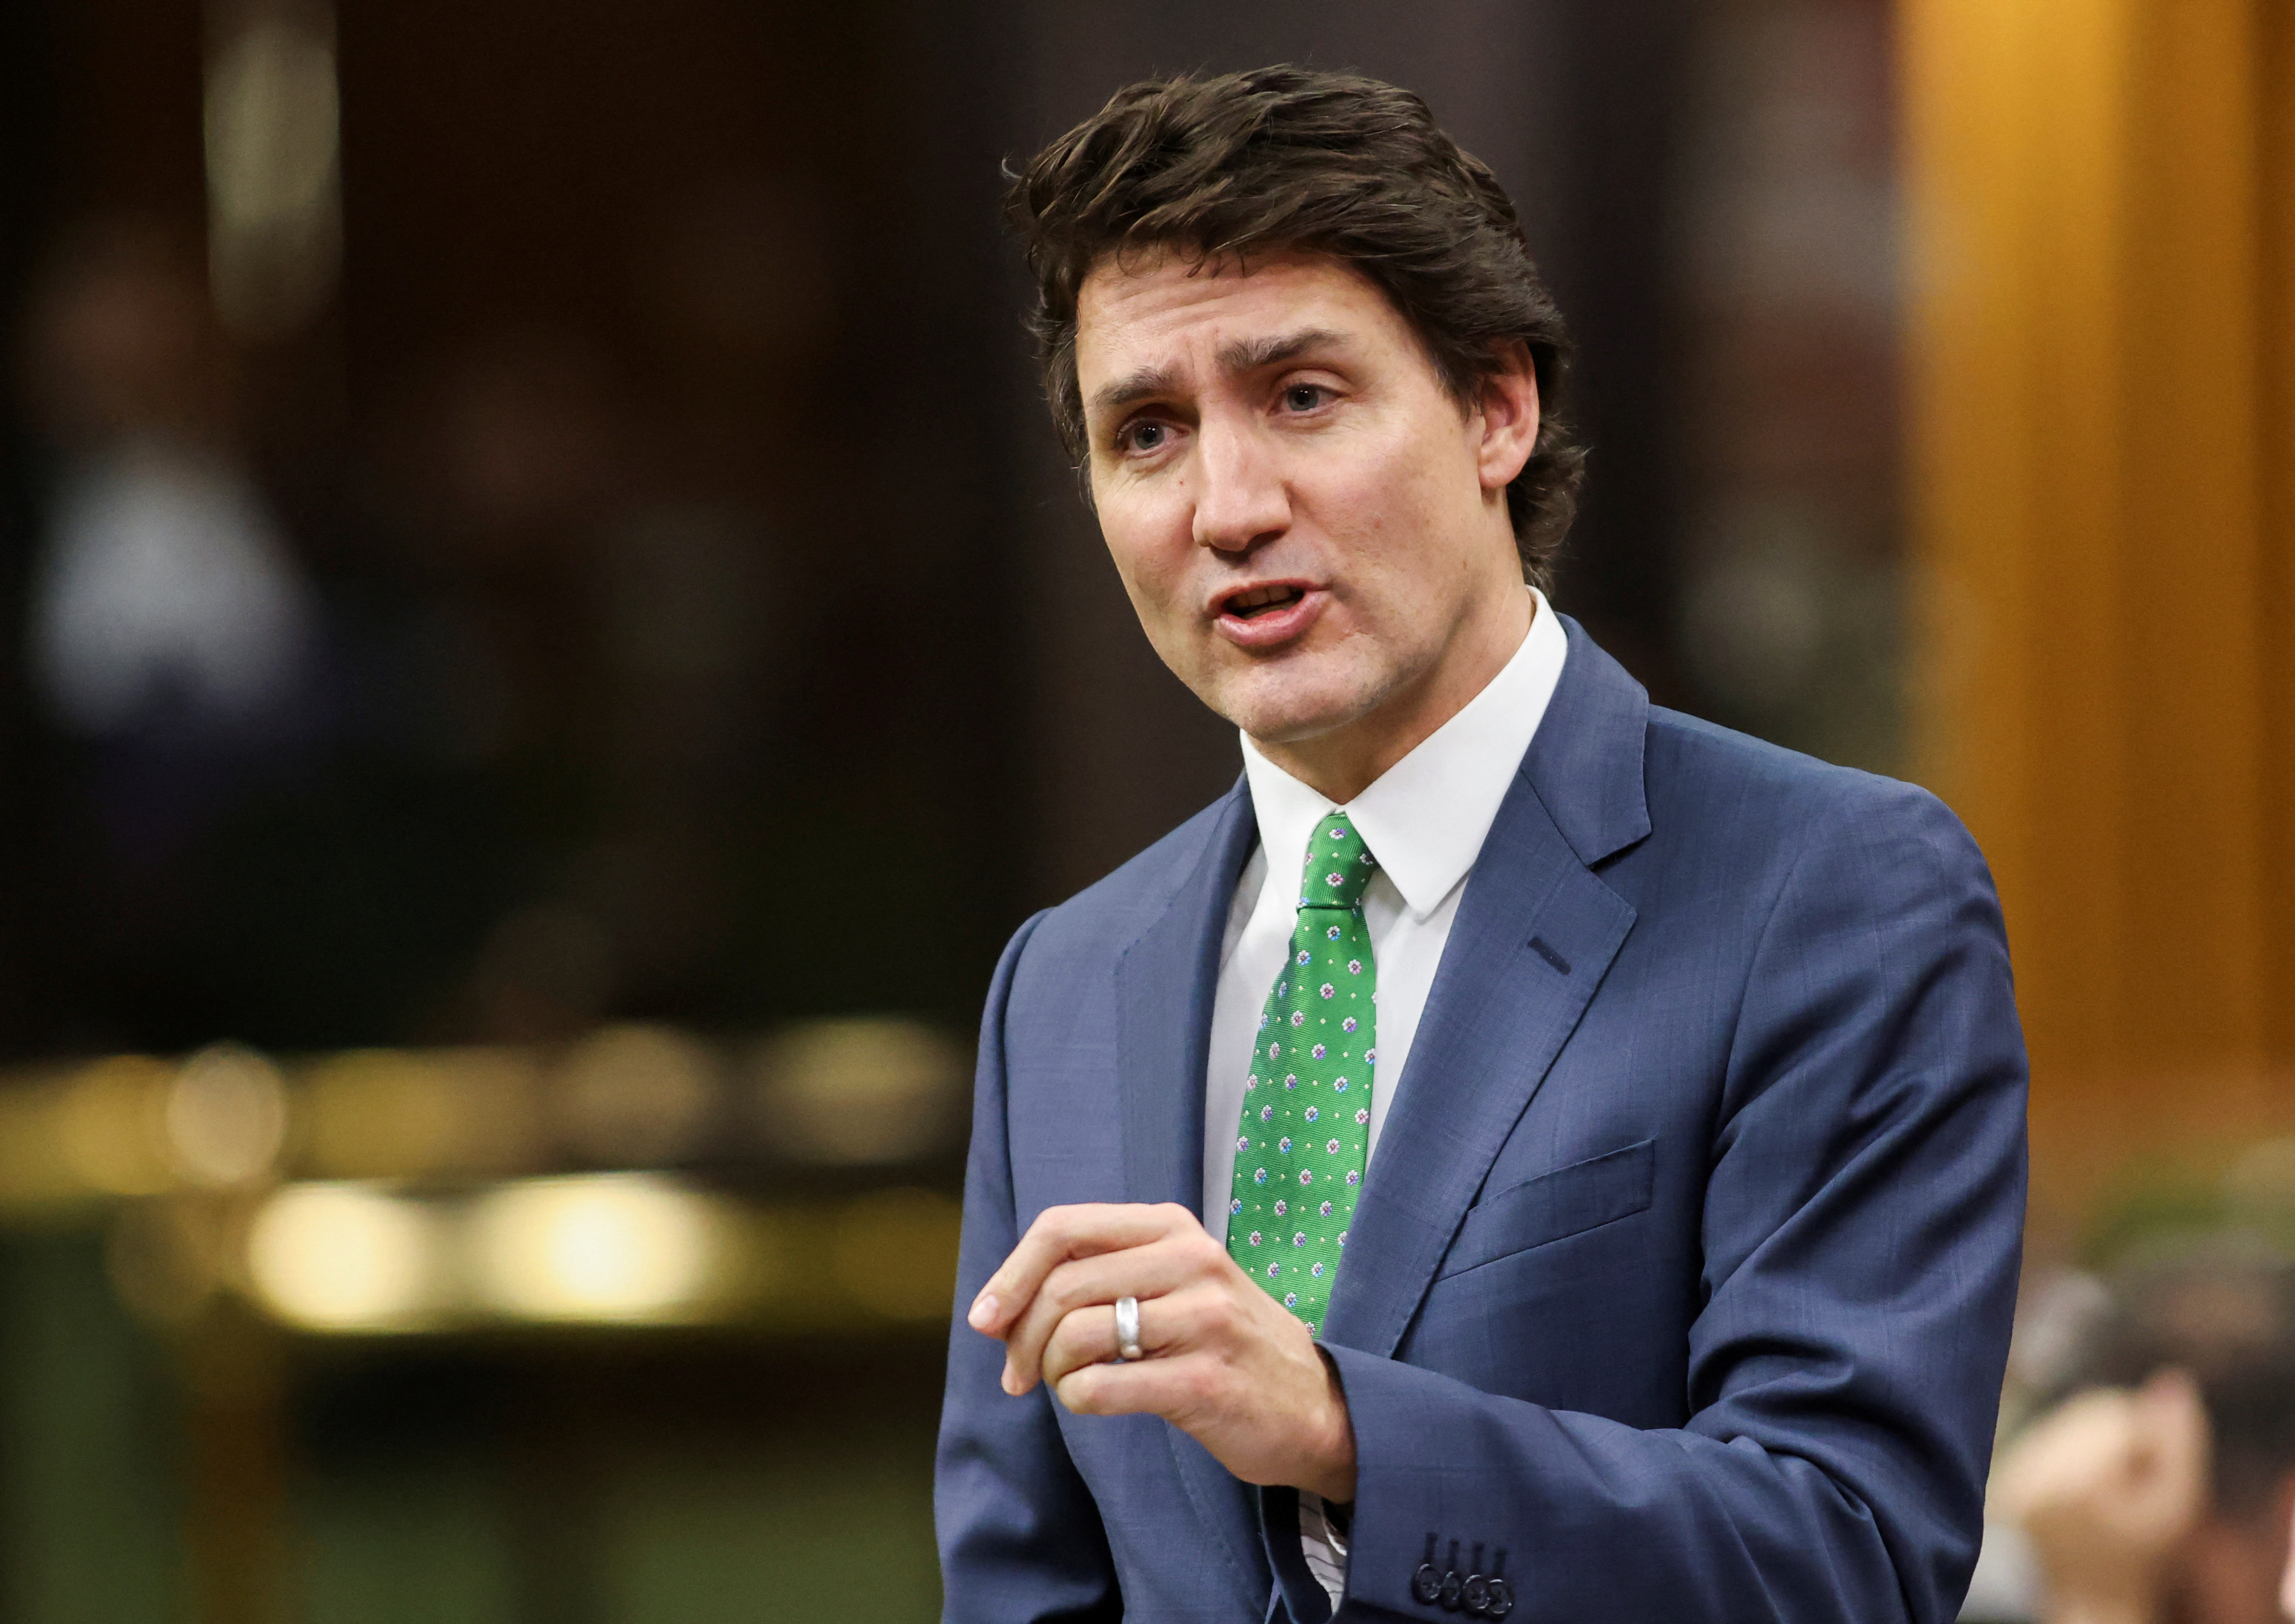 Canada's PM Trudeau speaks in parliament during Question Period in Ottawa